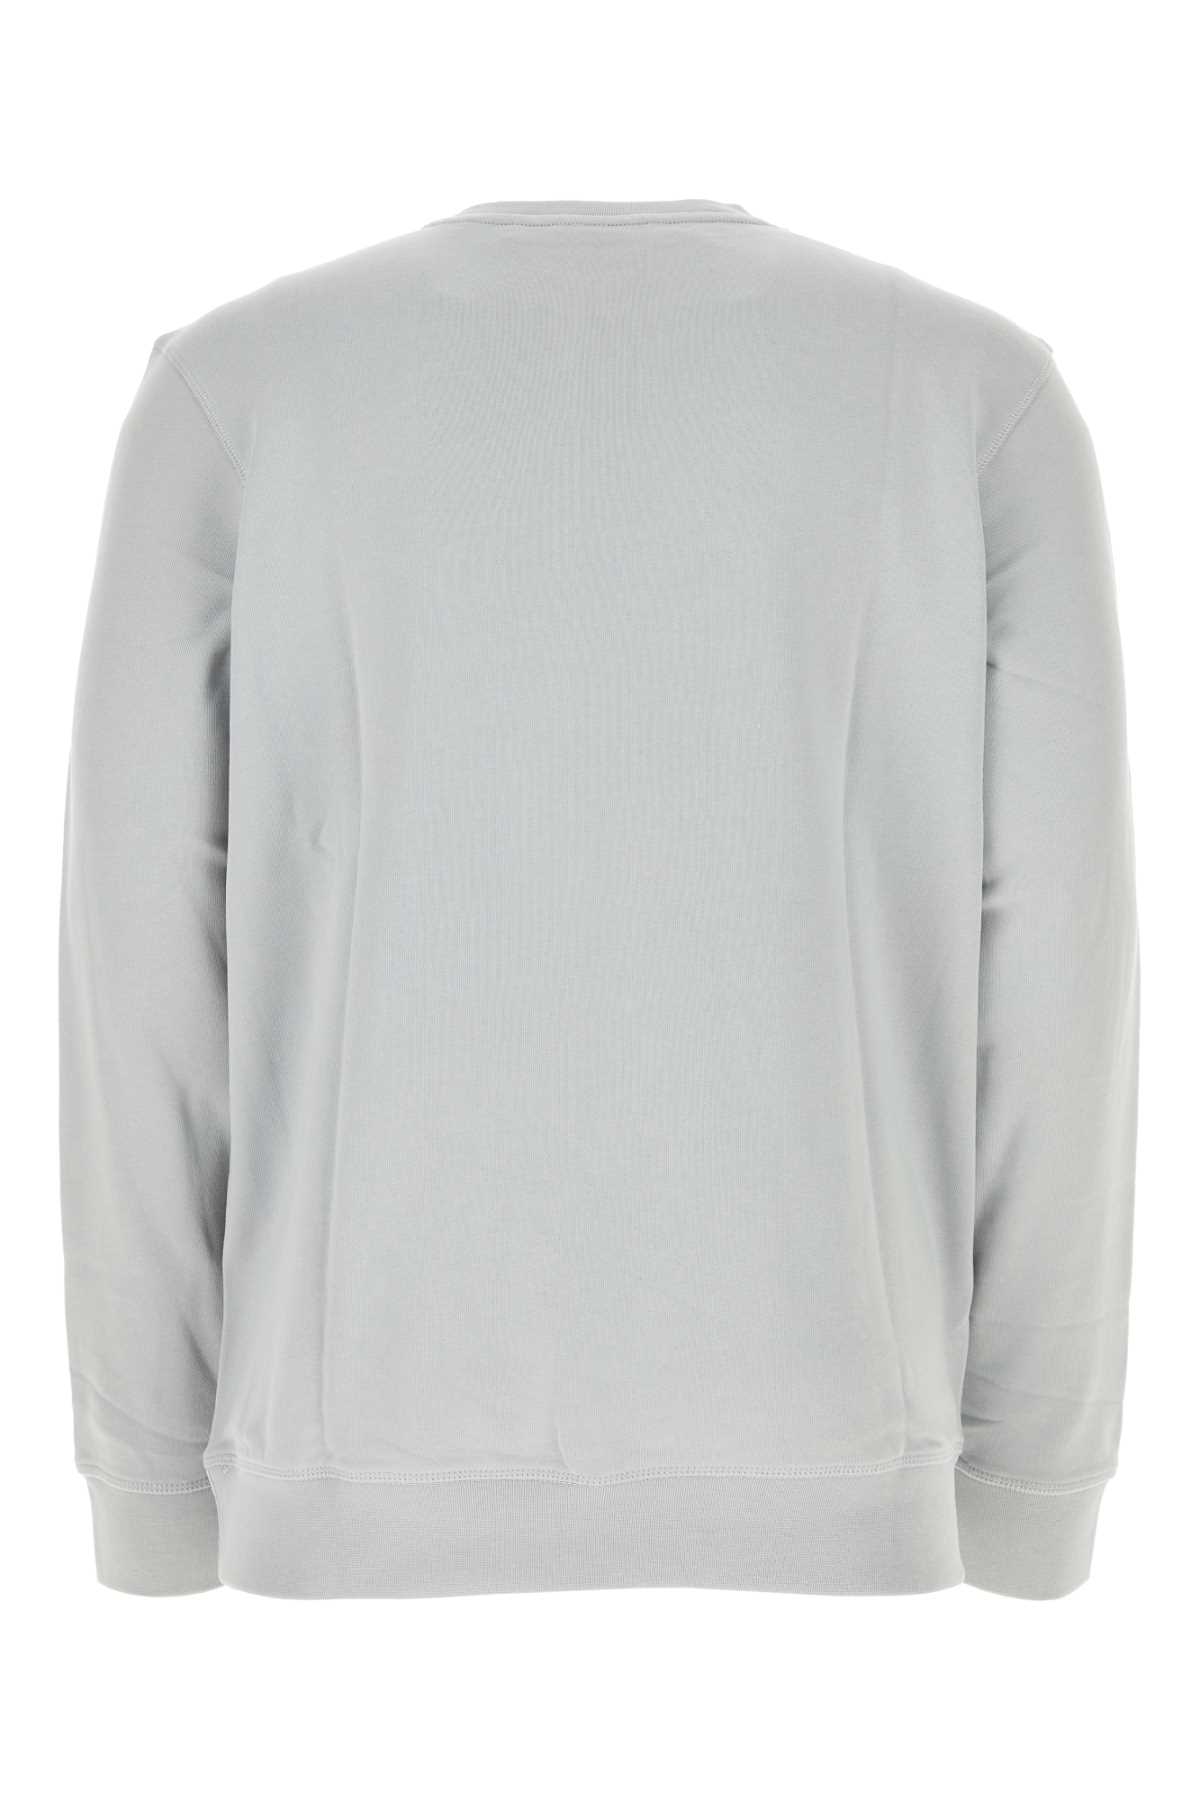 Hugo Boss Light Grey Cotton Sweatshirt In Lightpastelgrey